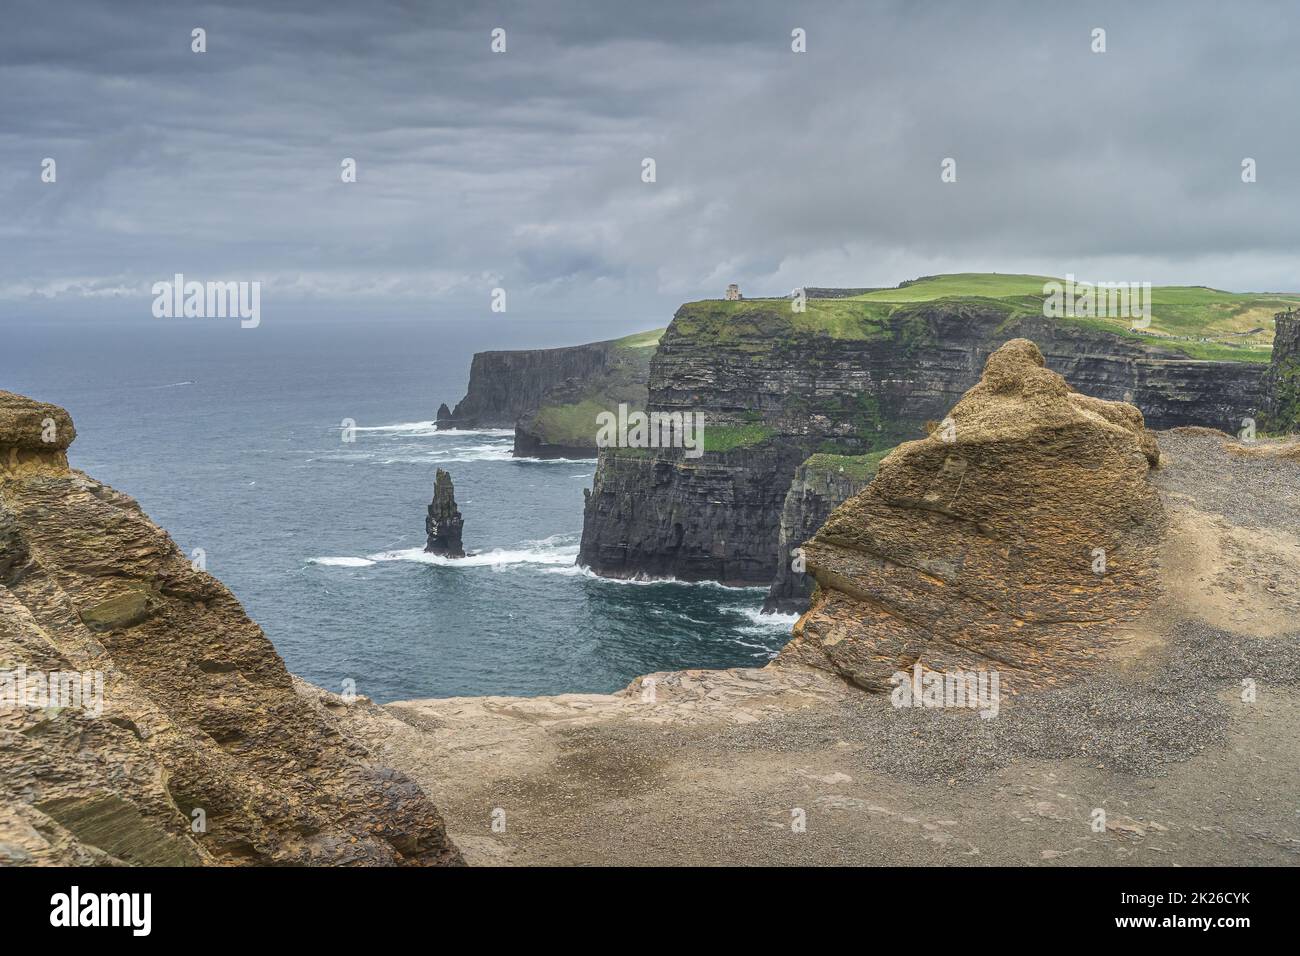 Tas de mer et formations rocheuses sur les falaises emblématiques de Moher, en Irlande Banque D'Images